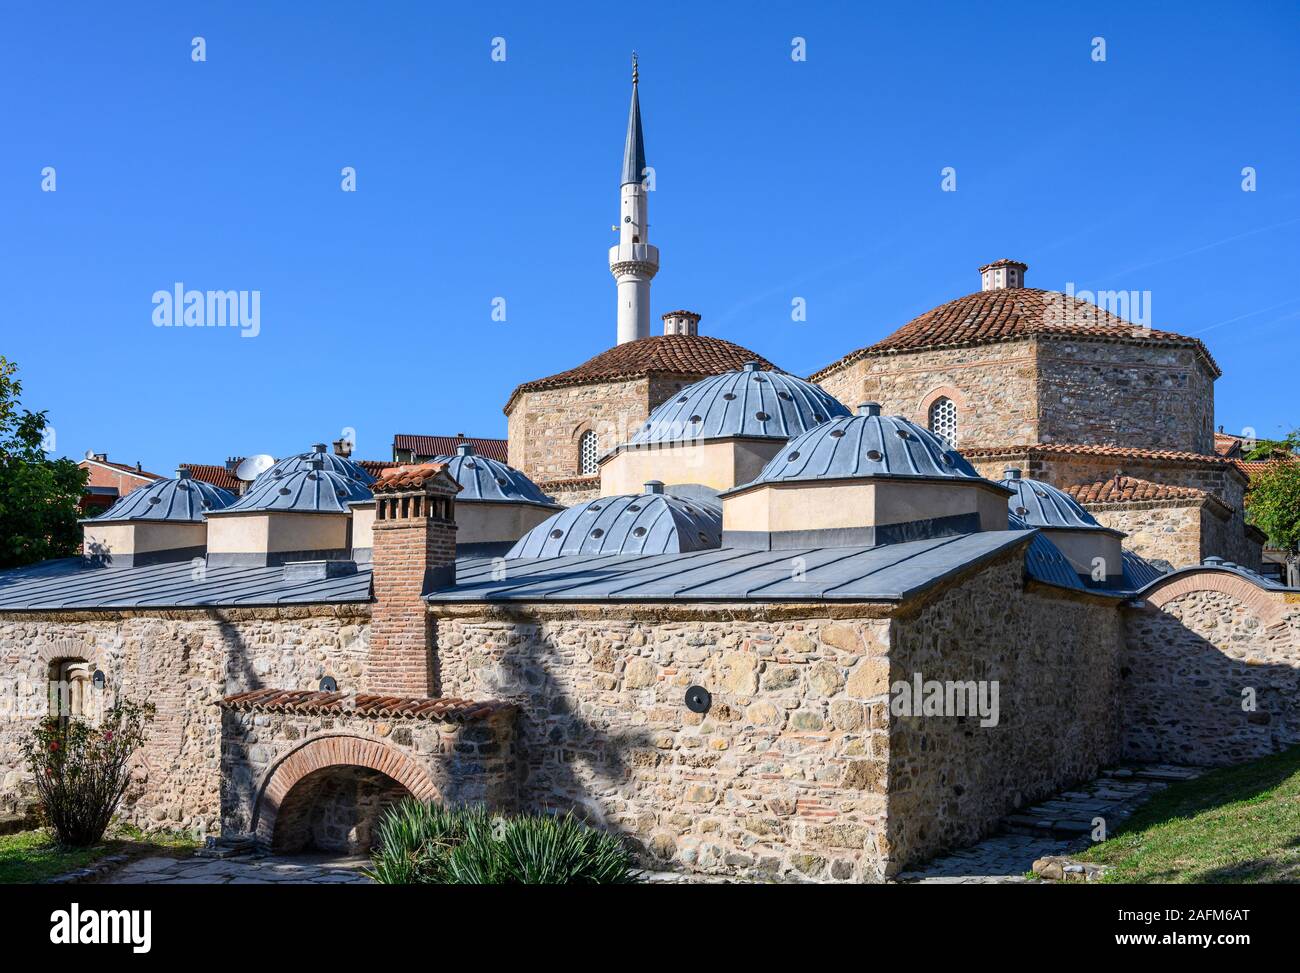 Le Hammam de Gazi Mehmet Pacha, construit au 16e siècle. avec le minaret de la mosquée Emin Pacha en arrière-plan. À Prizren, Kosovo, Bal centrale Banque D'Images